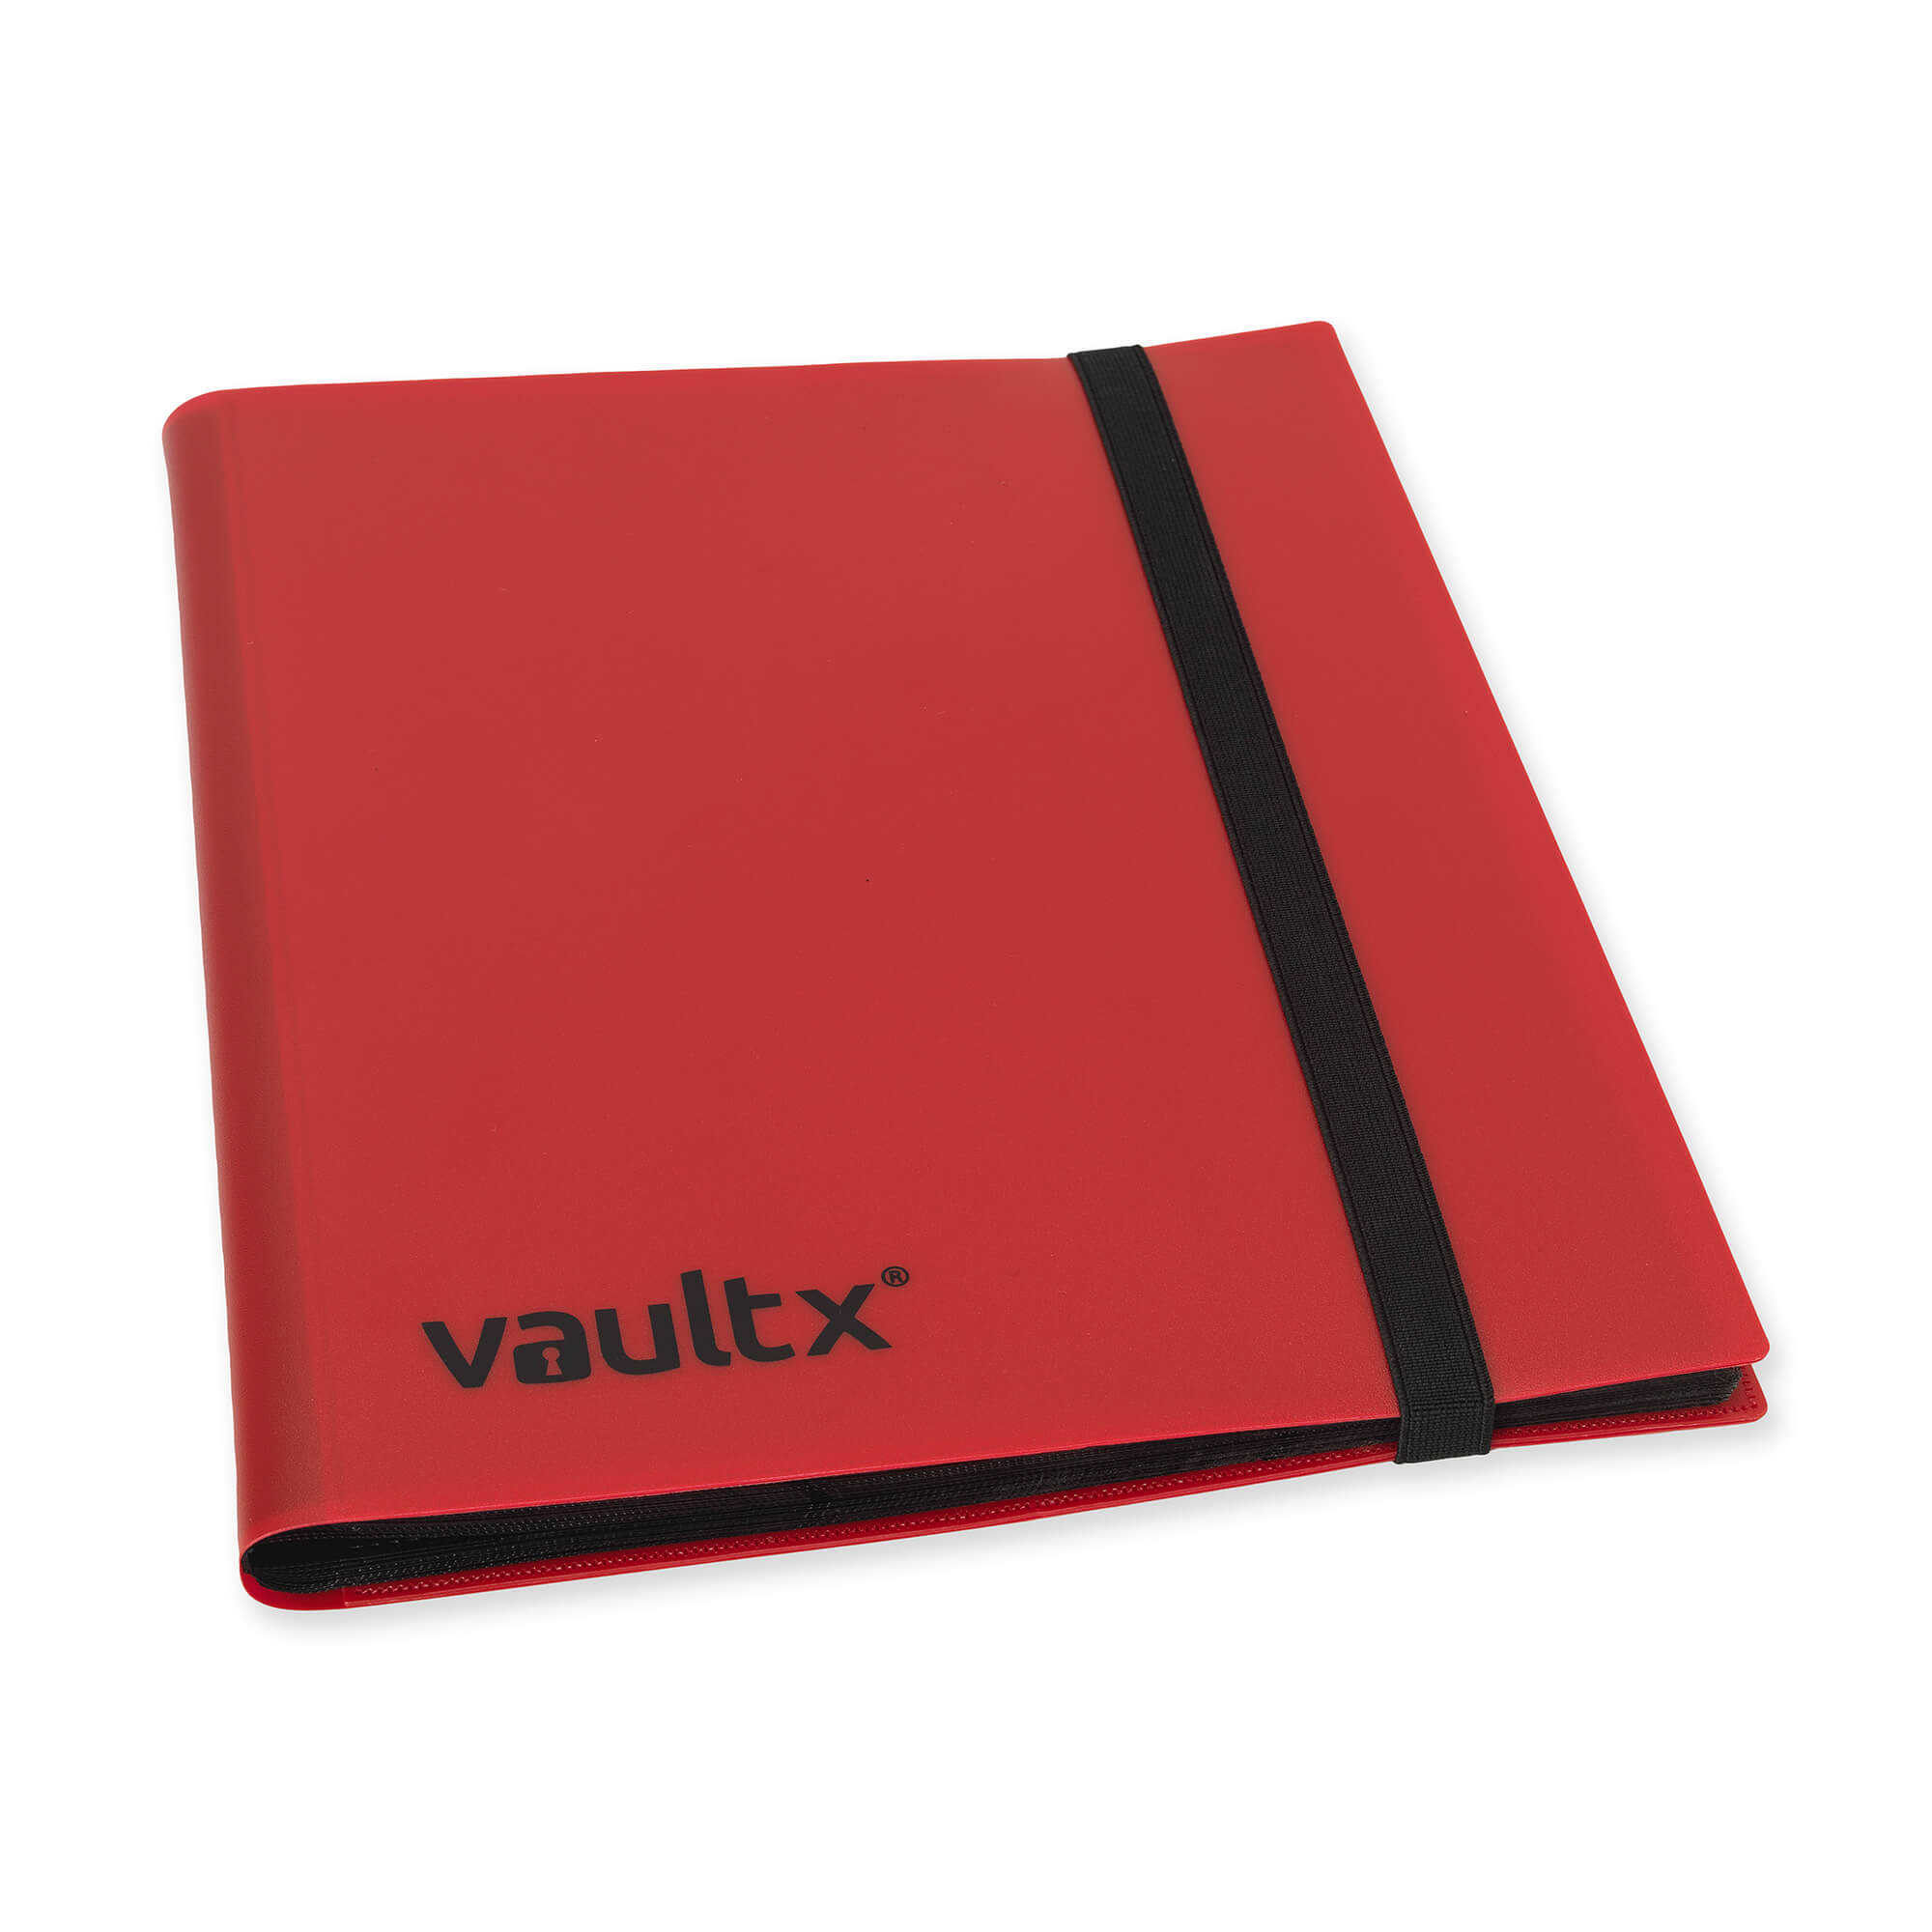 Card Binders – Vault X UK